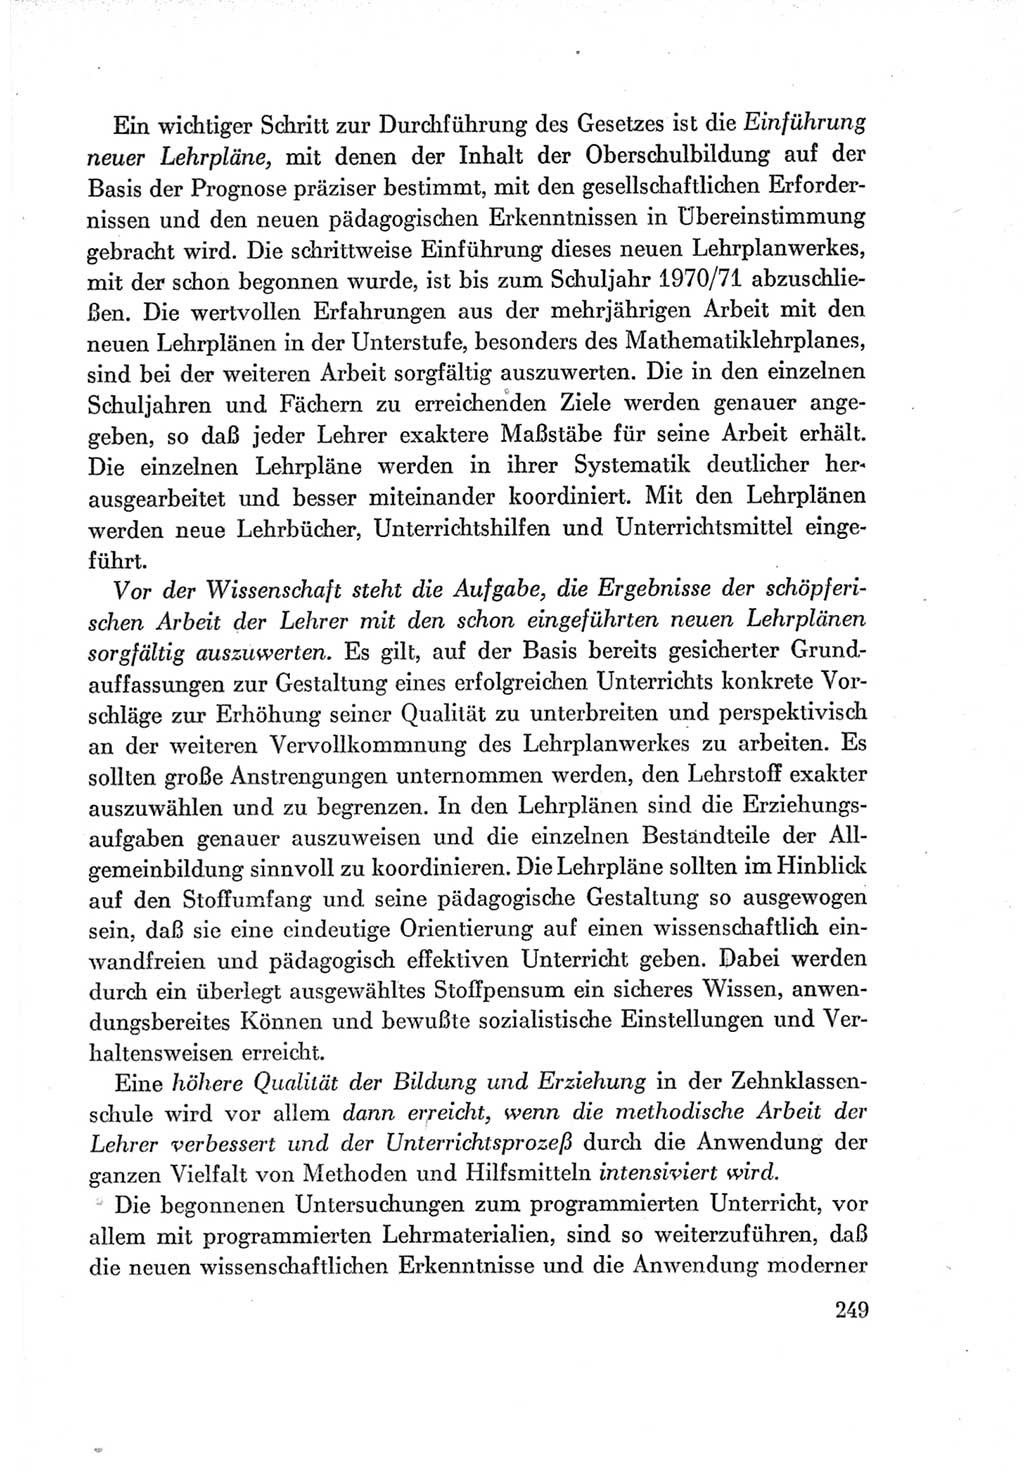 Protokoll der Verhandlungen des Ⅶ. Parteitages der Sozialistischen Einheitspartei Deutschlands (SED) [Deutsche Demokratische Republik (DDR)] 1967, Band Ⅰ, Seite 249 (Prot. Verh. Ⅶ. PT SED DDR 1967, Bd. Ⅰ, S. 249)